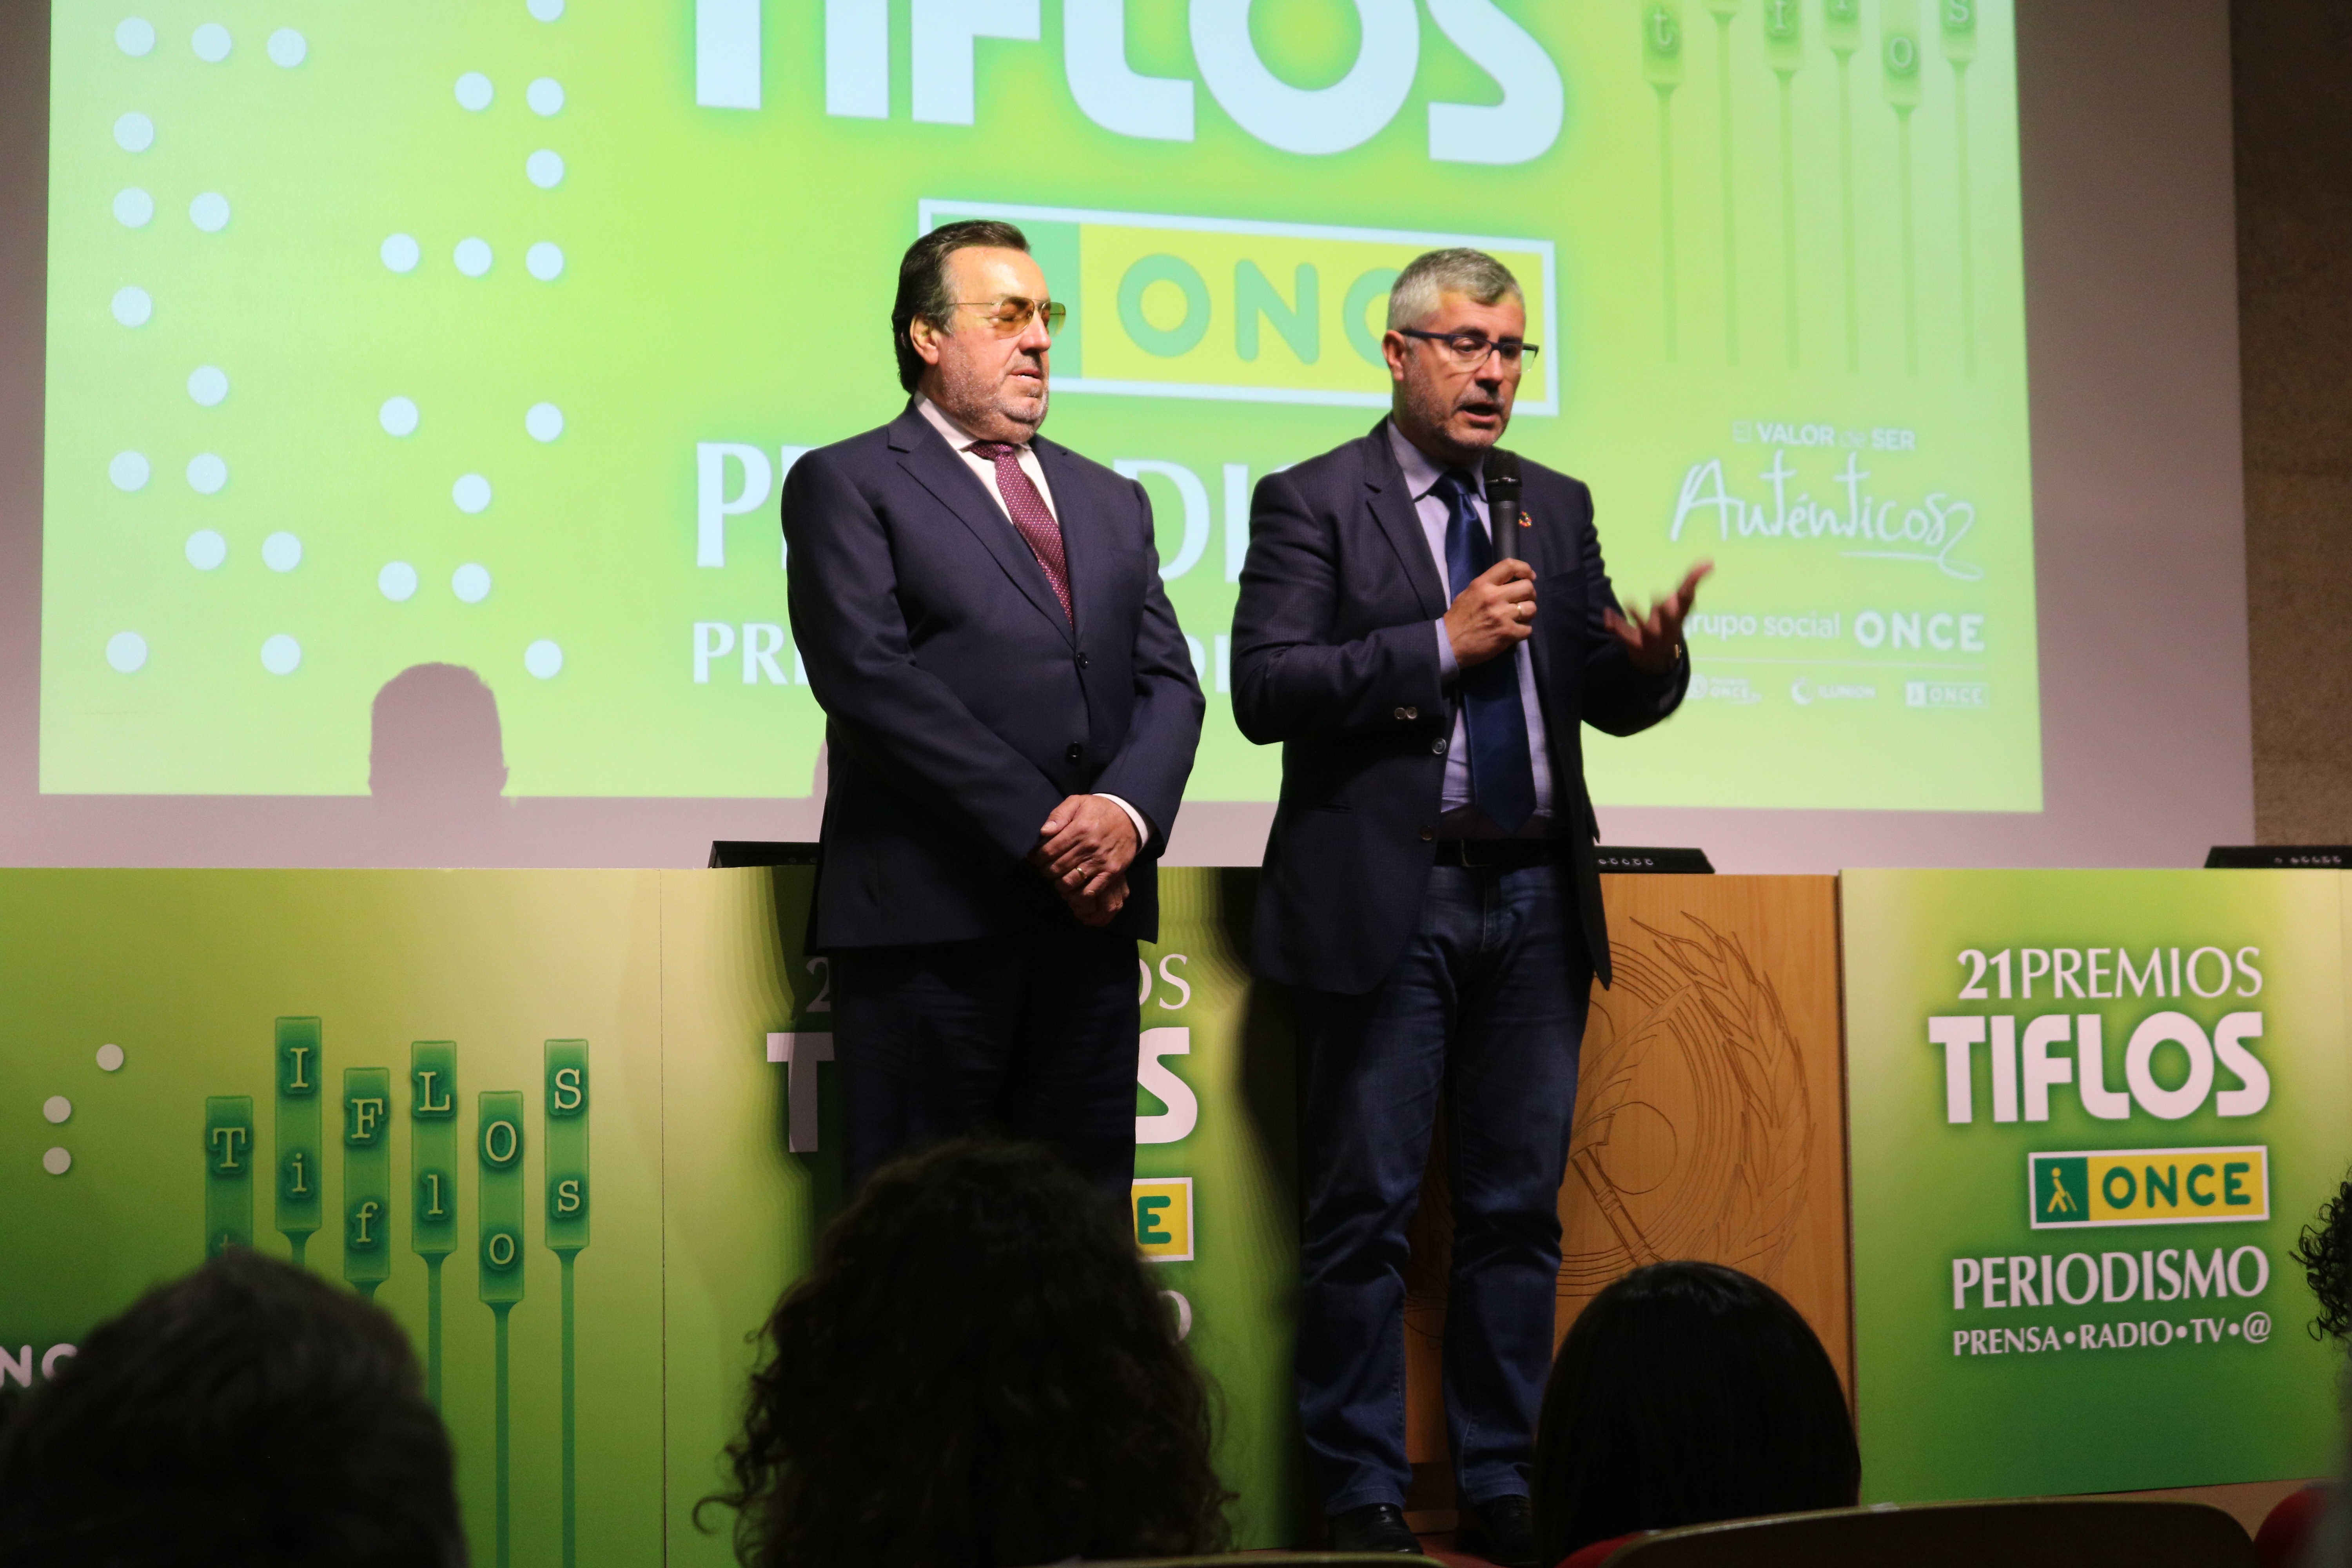 La Facultad acoge los Premios Tiflos de Periodismo 2019 - 13